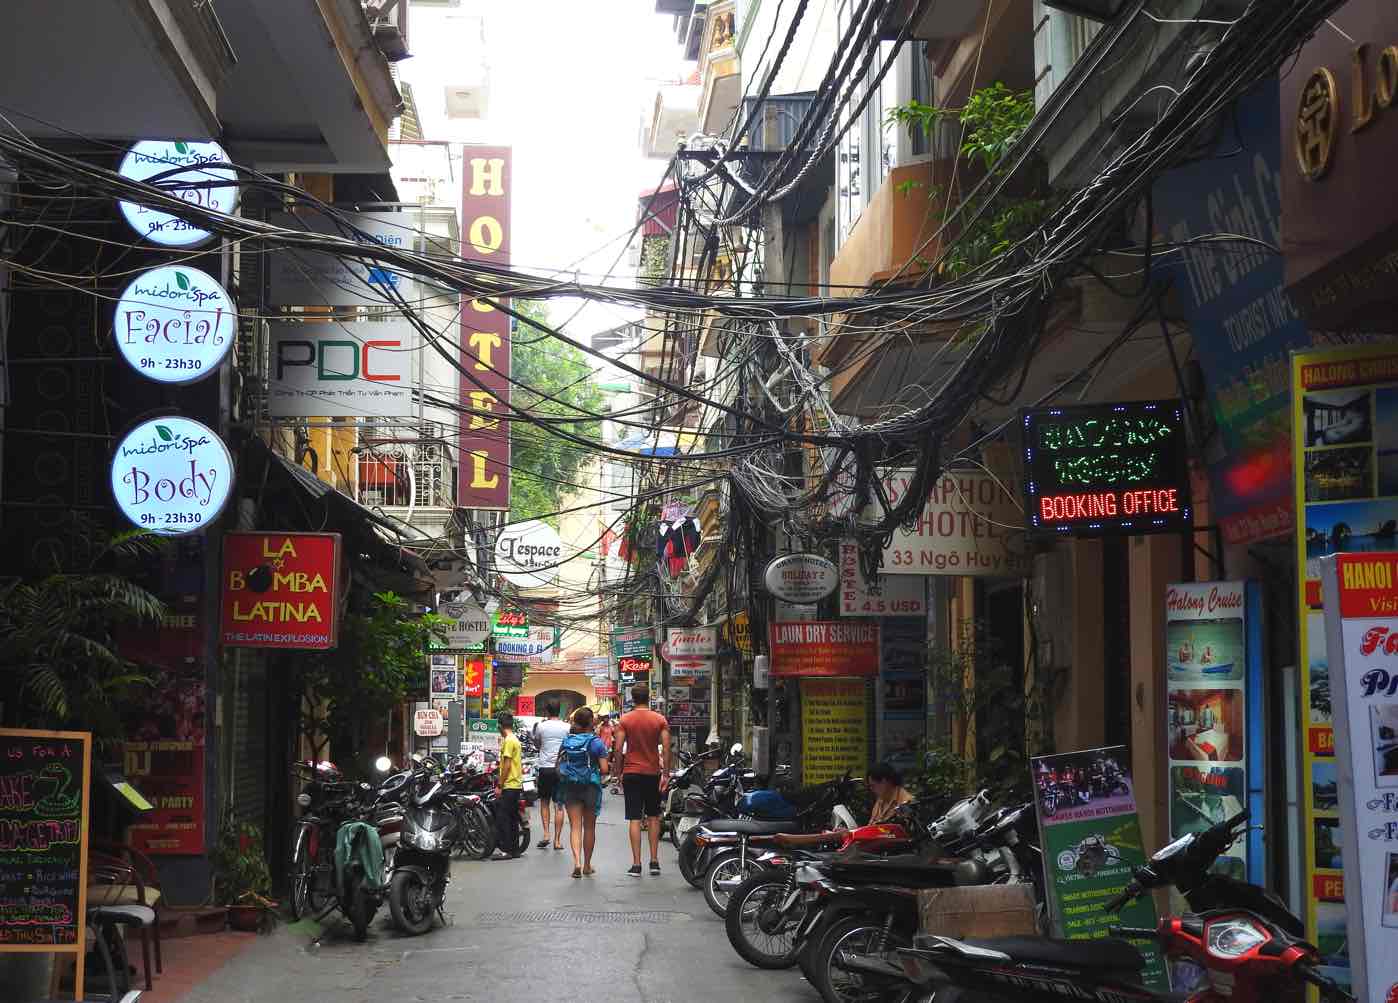 Ta Hien street - Draft beer street